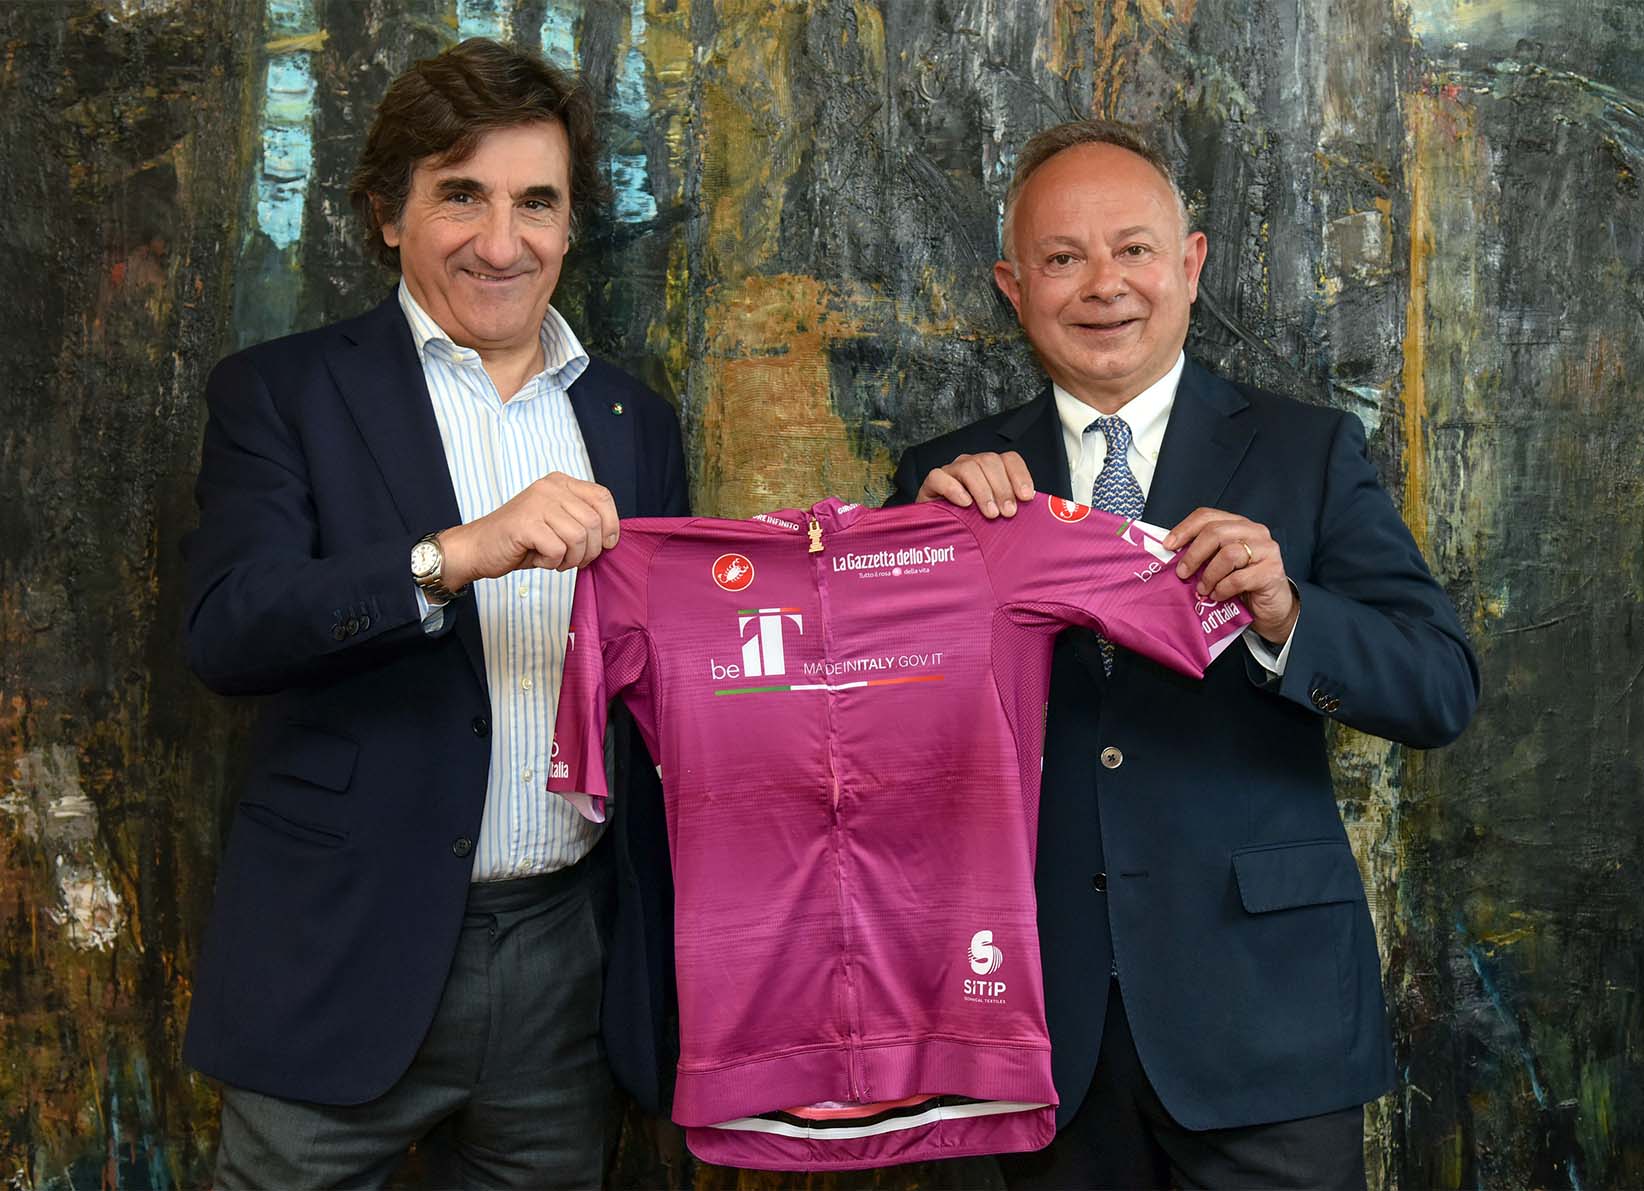 Giro d'Italia 2022: La maglia ciclamino dedicata al made in Italy